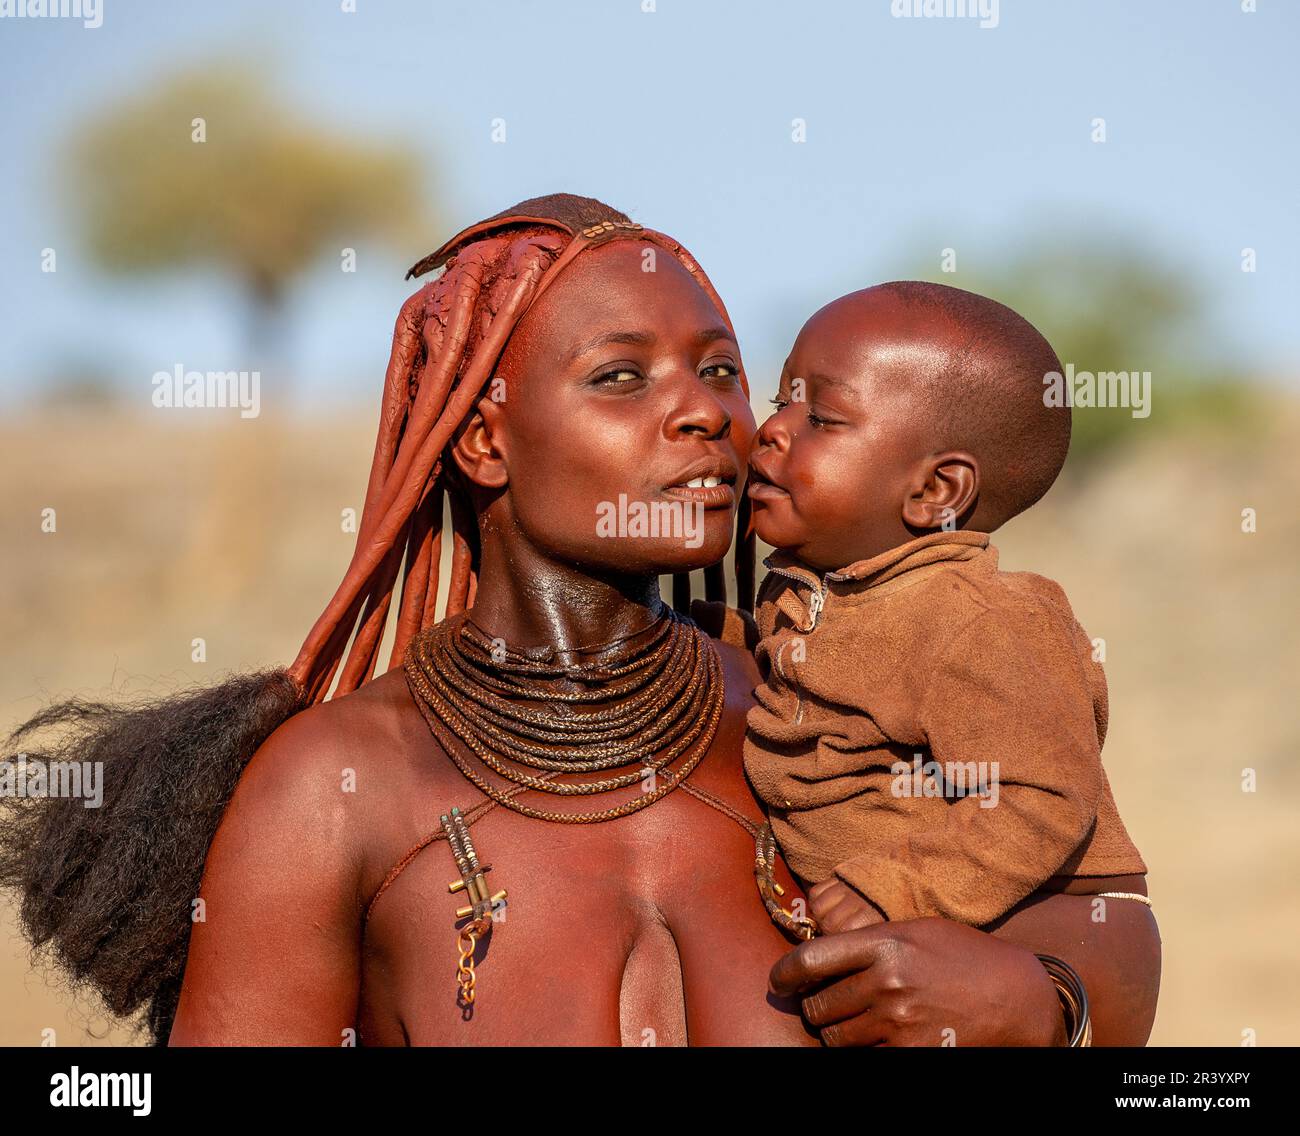 Porträt einer jungen Frau des Himba-Stammes mit einem kleinen Kind in ihren Armen. Stockfoto